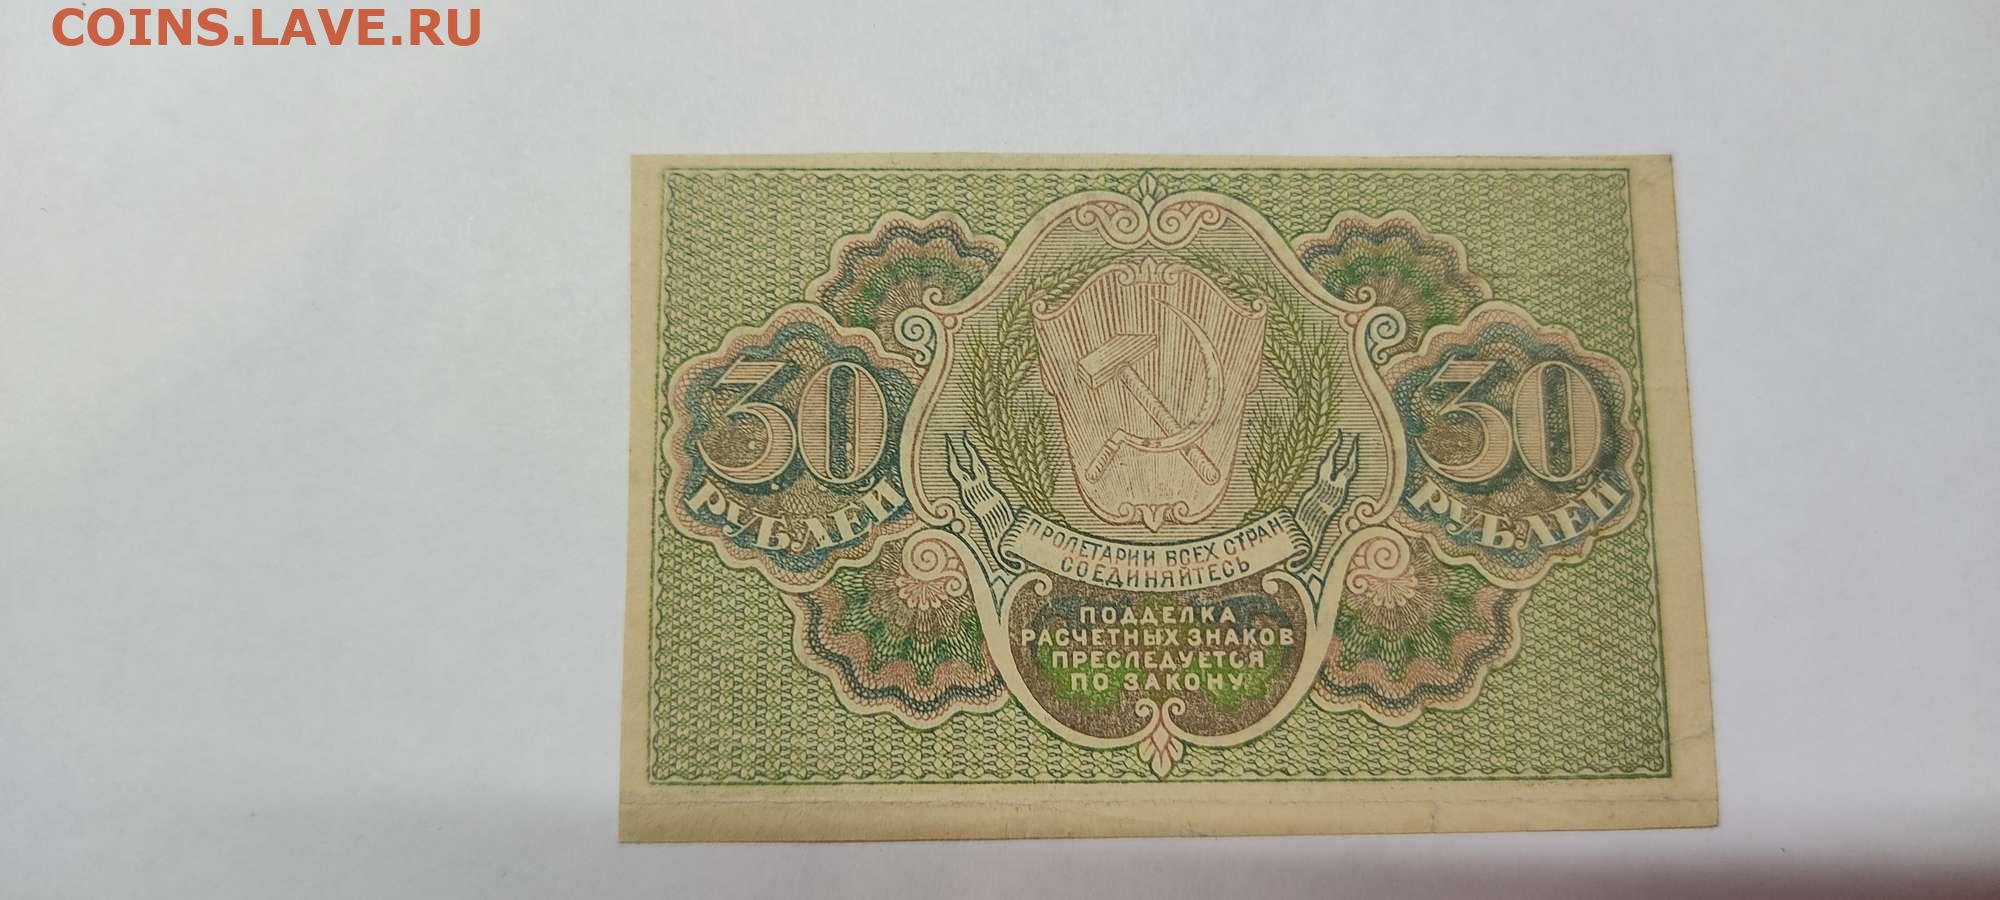 16 60 в рублях. Расчетный знак 30 рублей. Расчетный знак монеты. 60 Рублей 1919 лист. 30 Рублей.